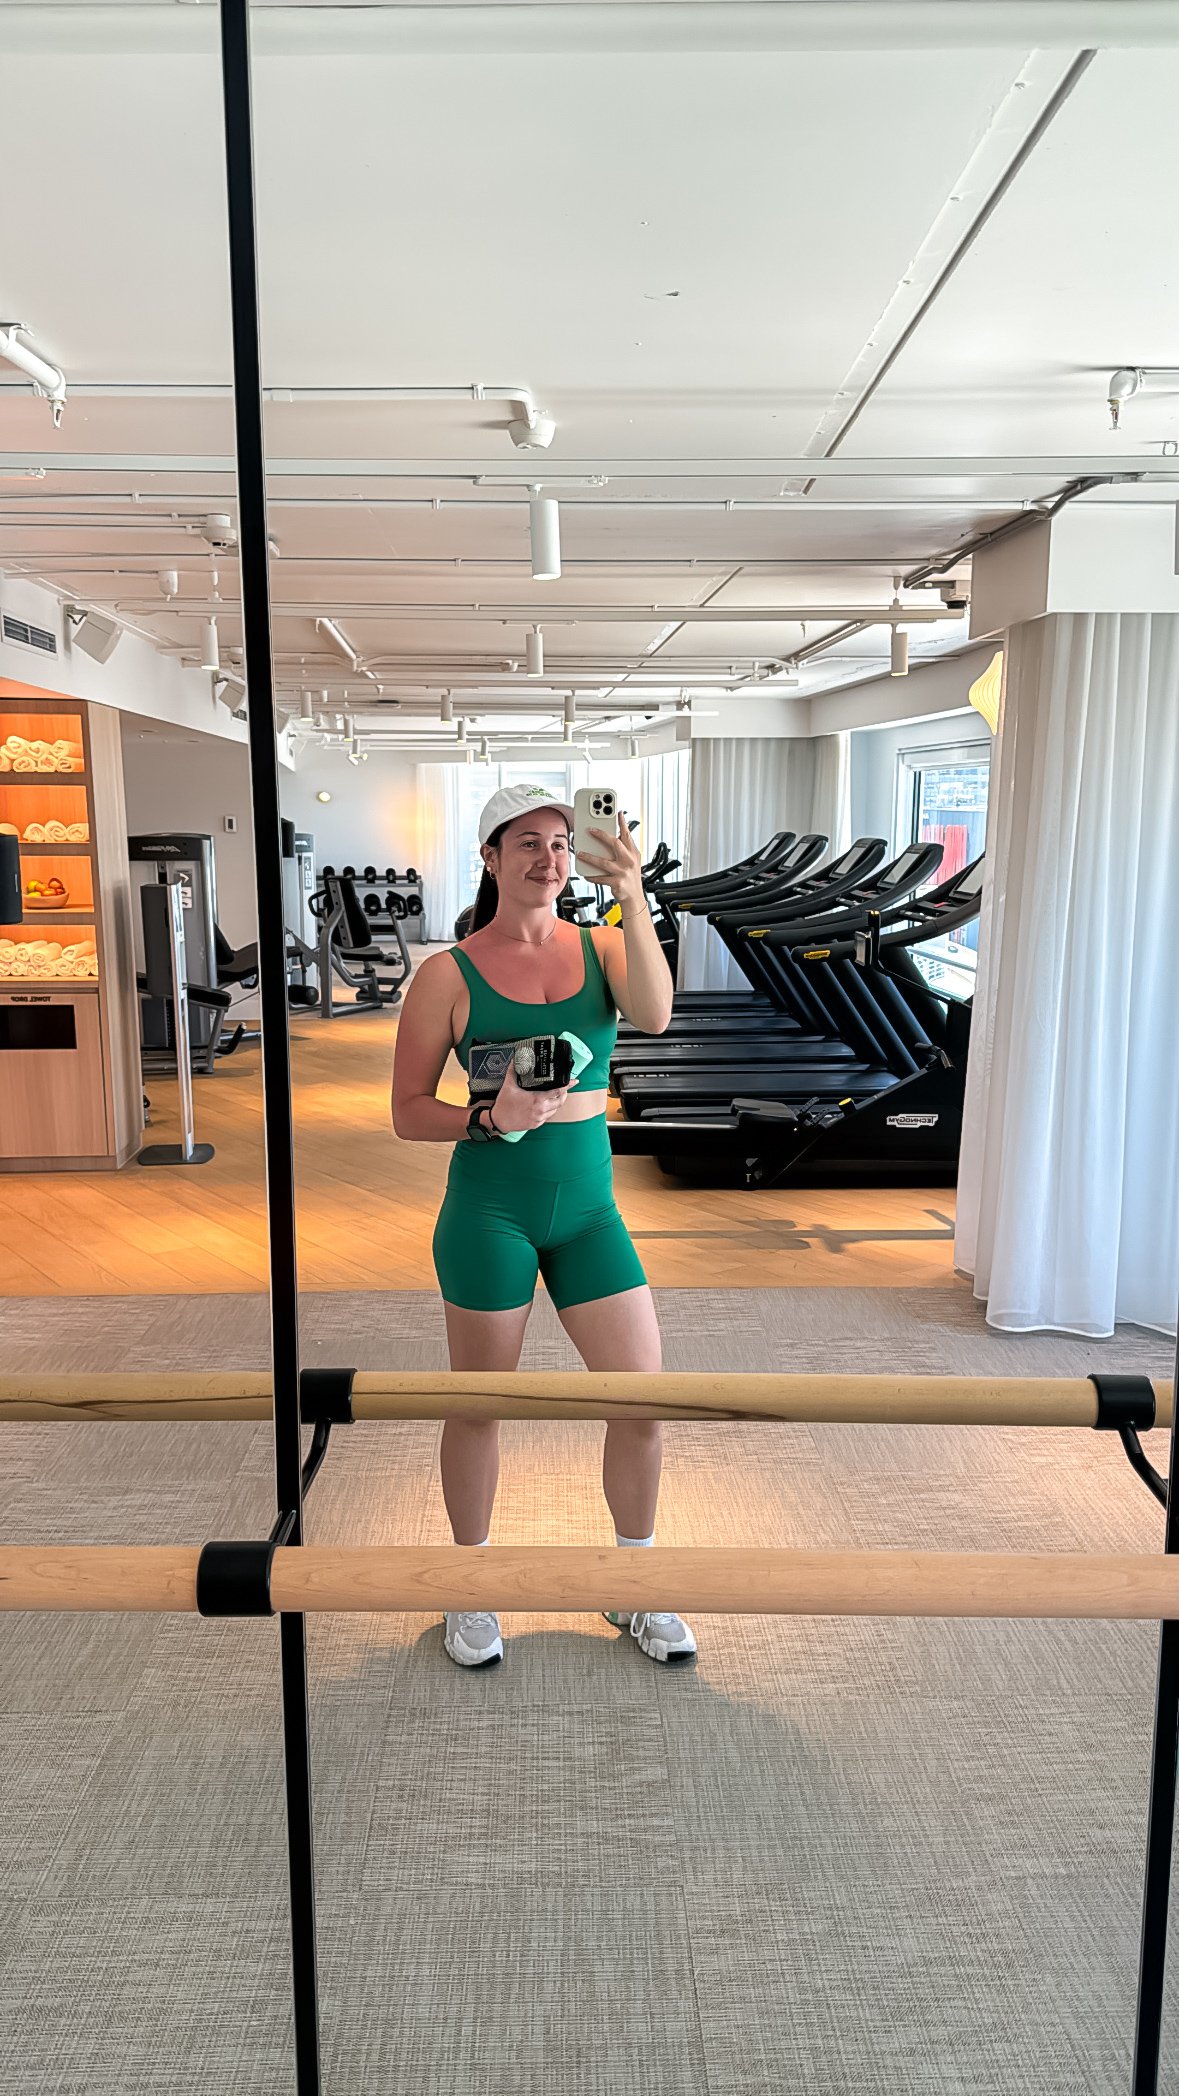 hyatt regency gym selfie.jpg